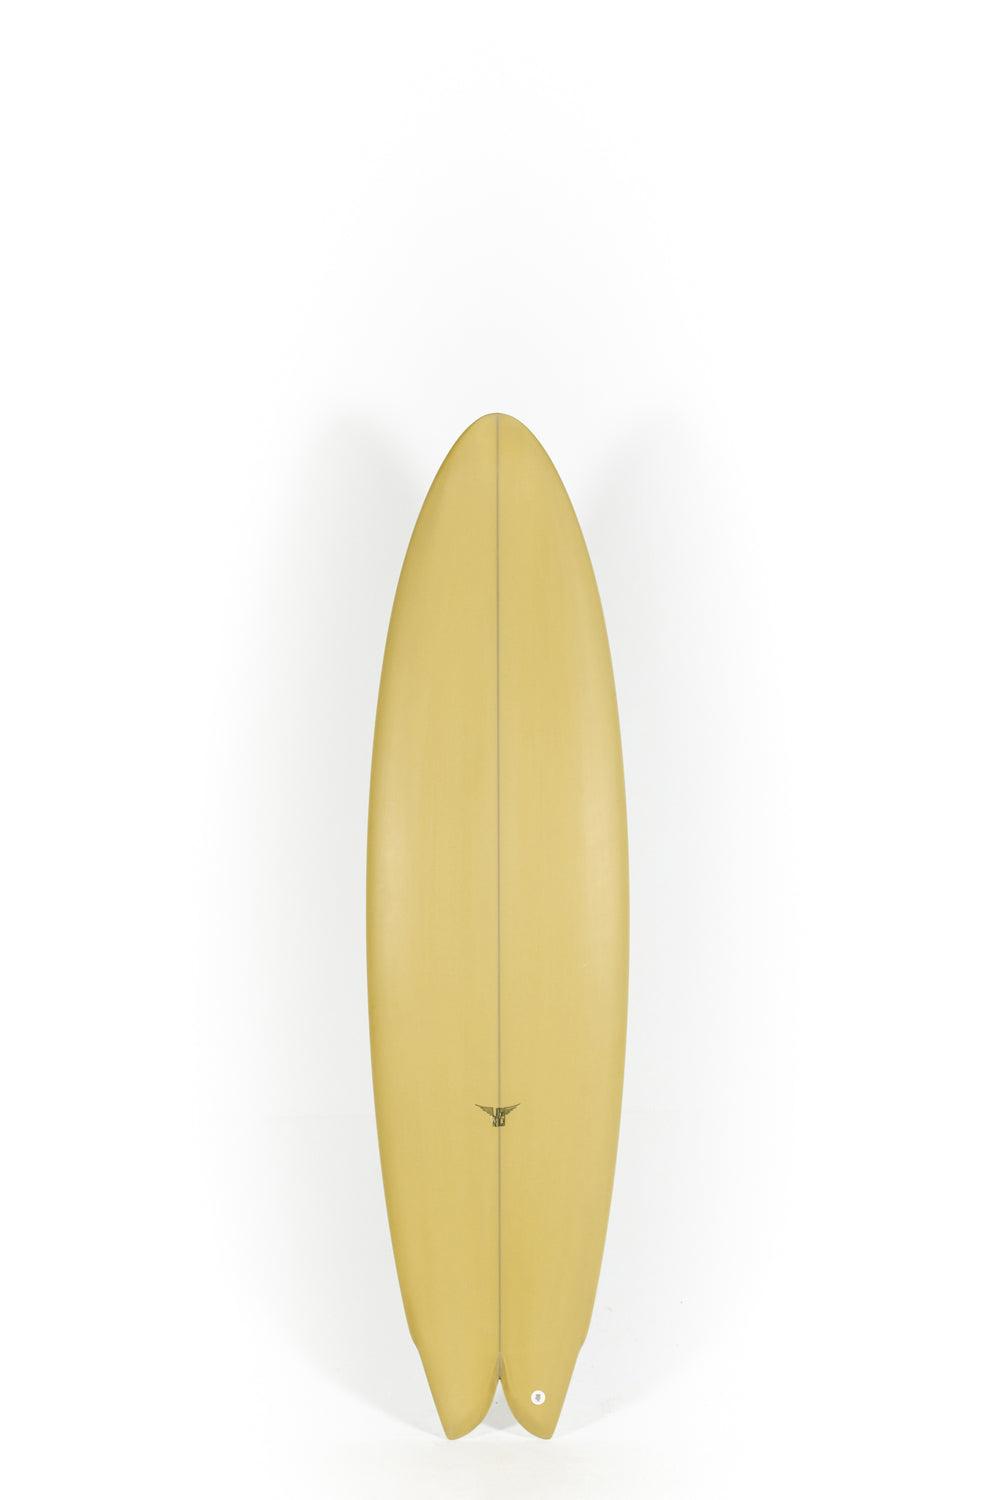 Pukas Surf Shop - Joshua Keogh Surfboard - M2 FLAT by Joshua Keogh - 6'8